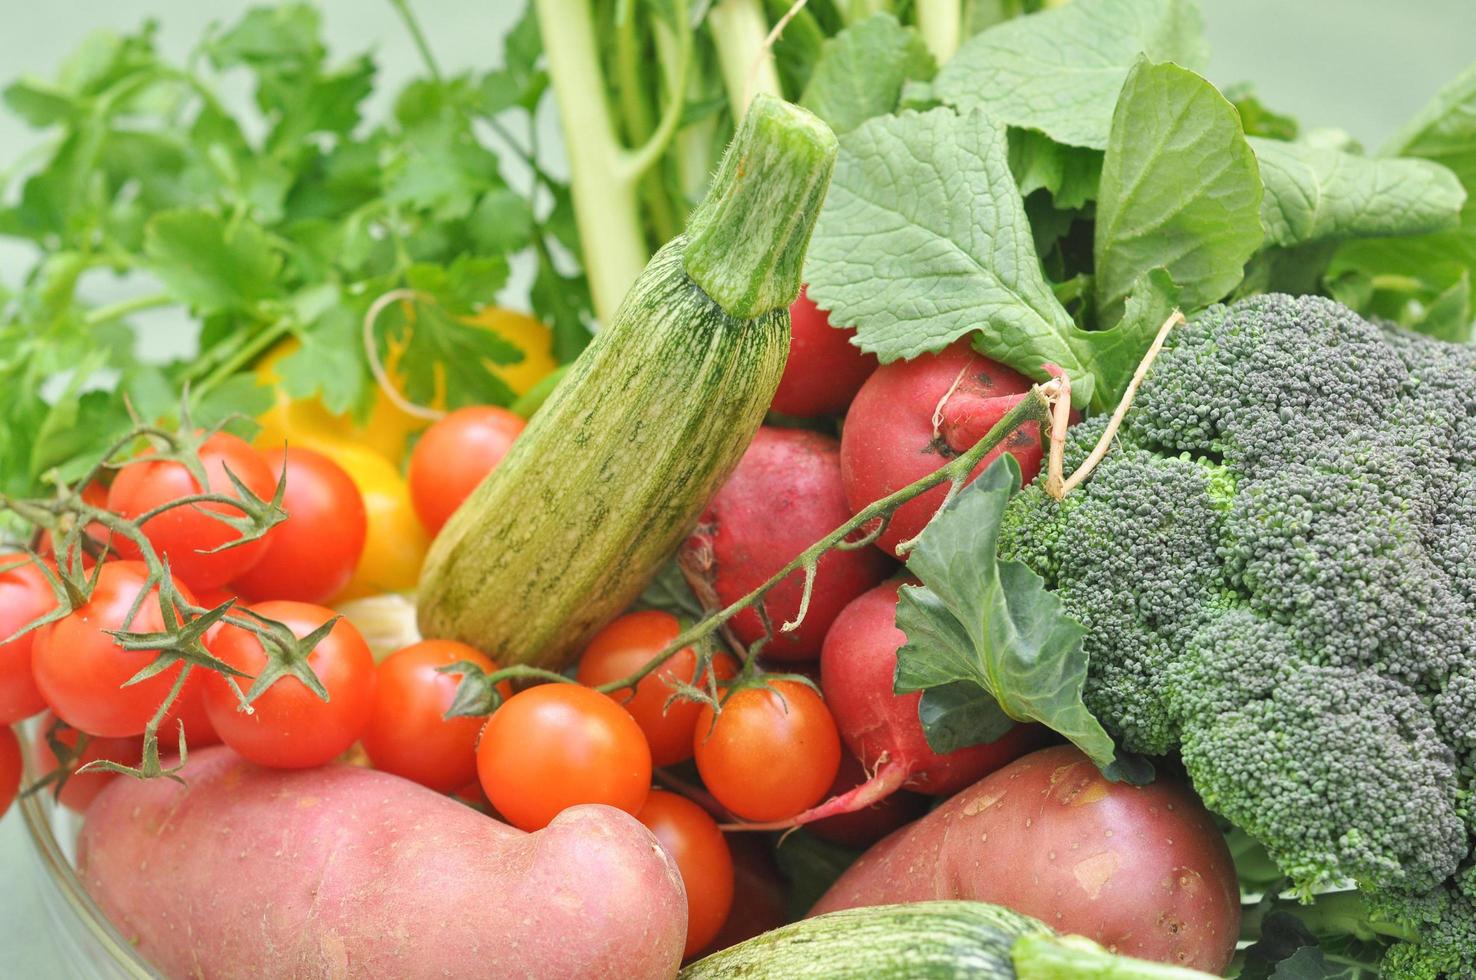 grönsaker och frukt på en stormarknadshylla foto